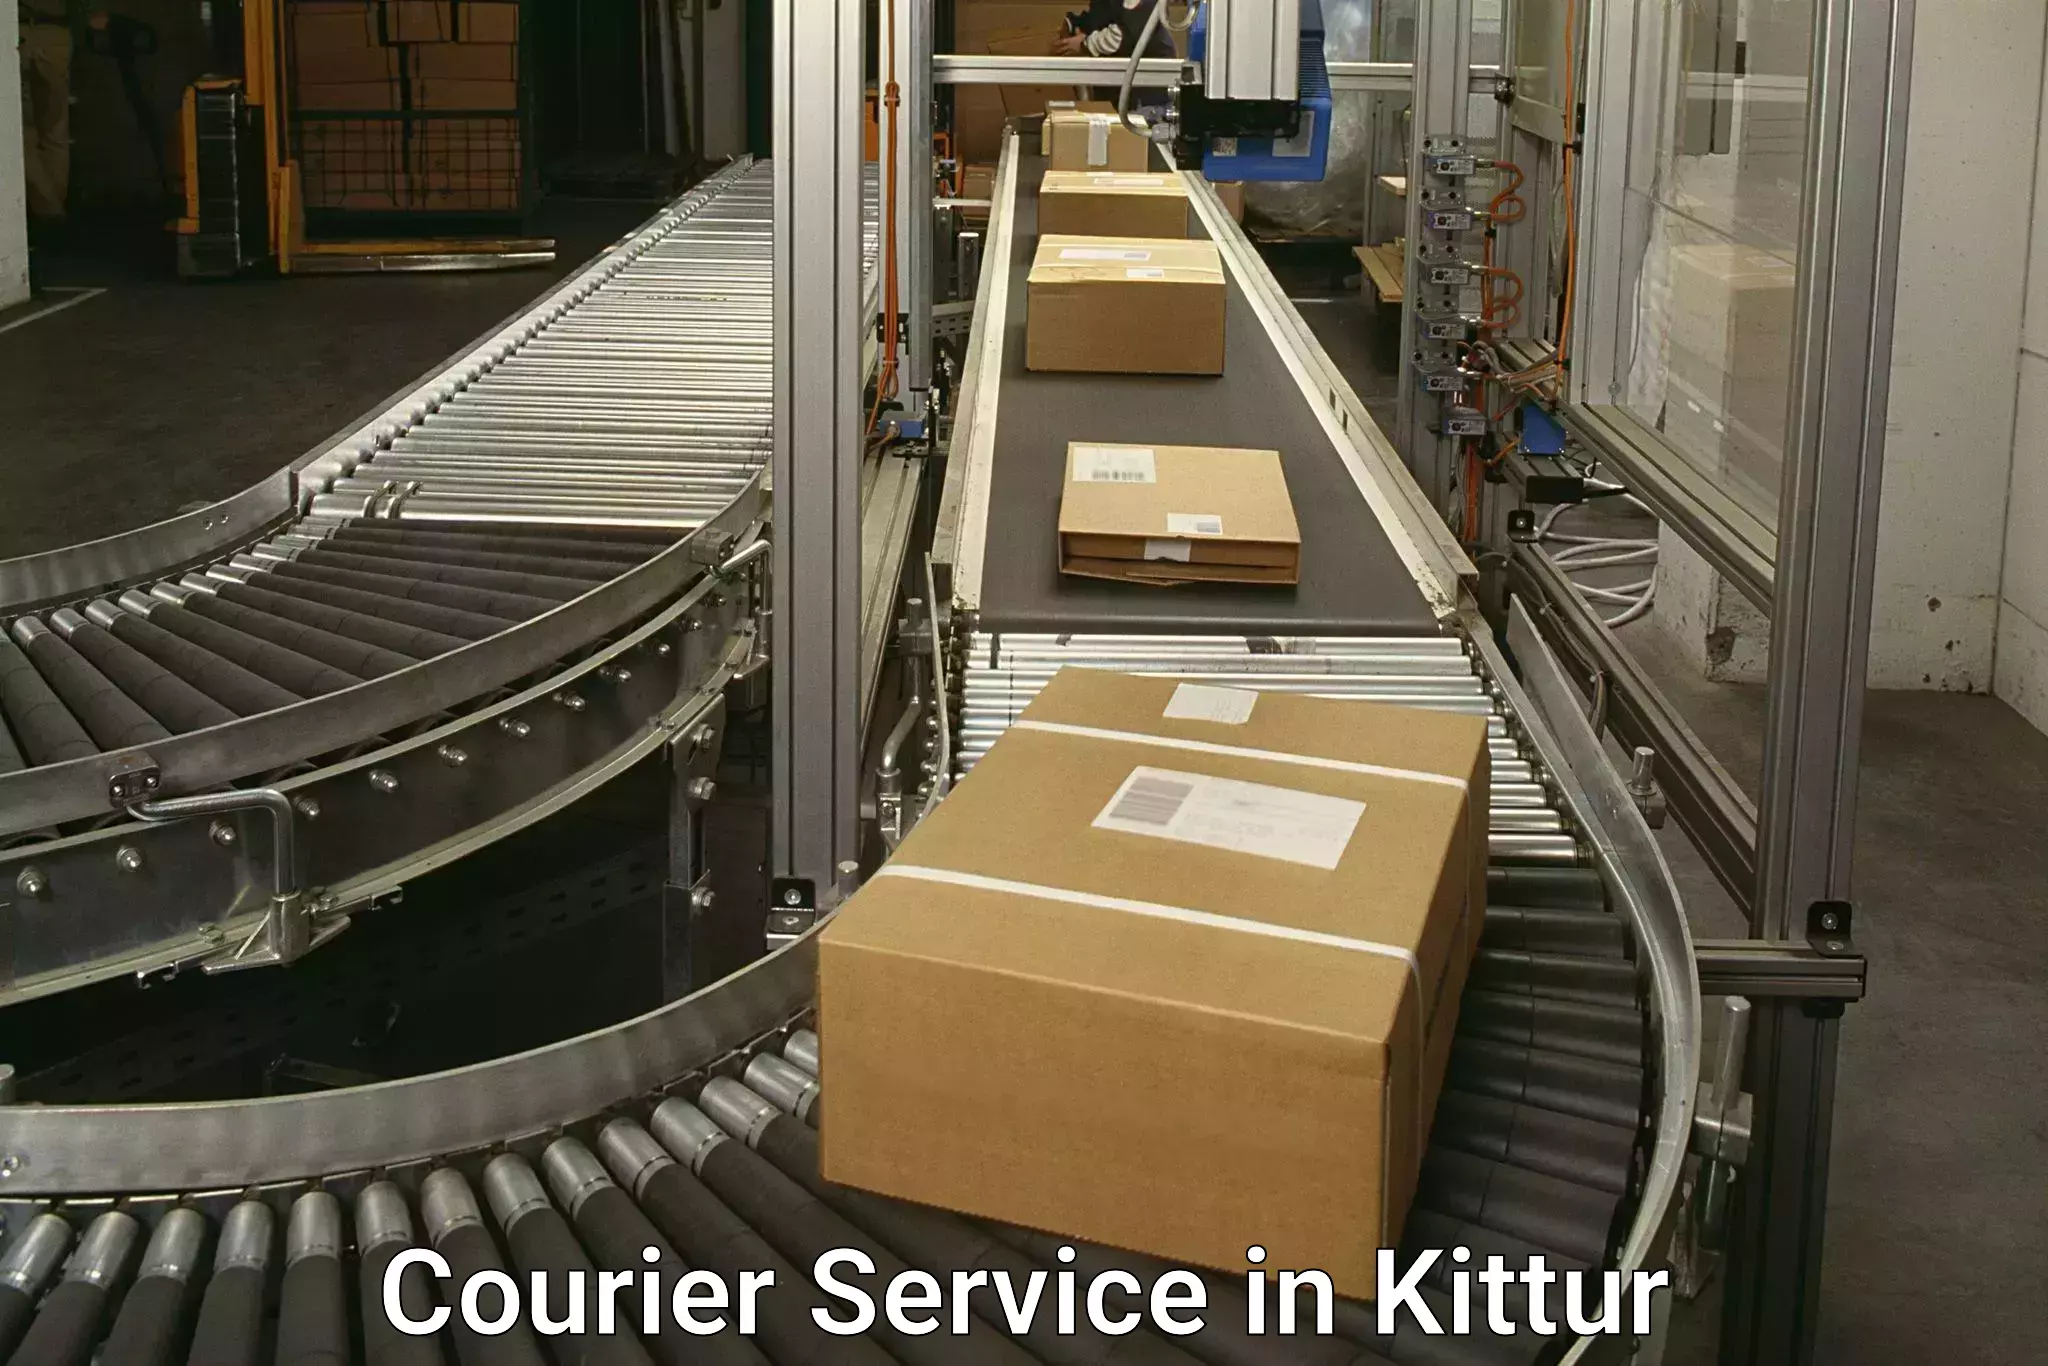 Urban courier service in Kittur